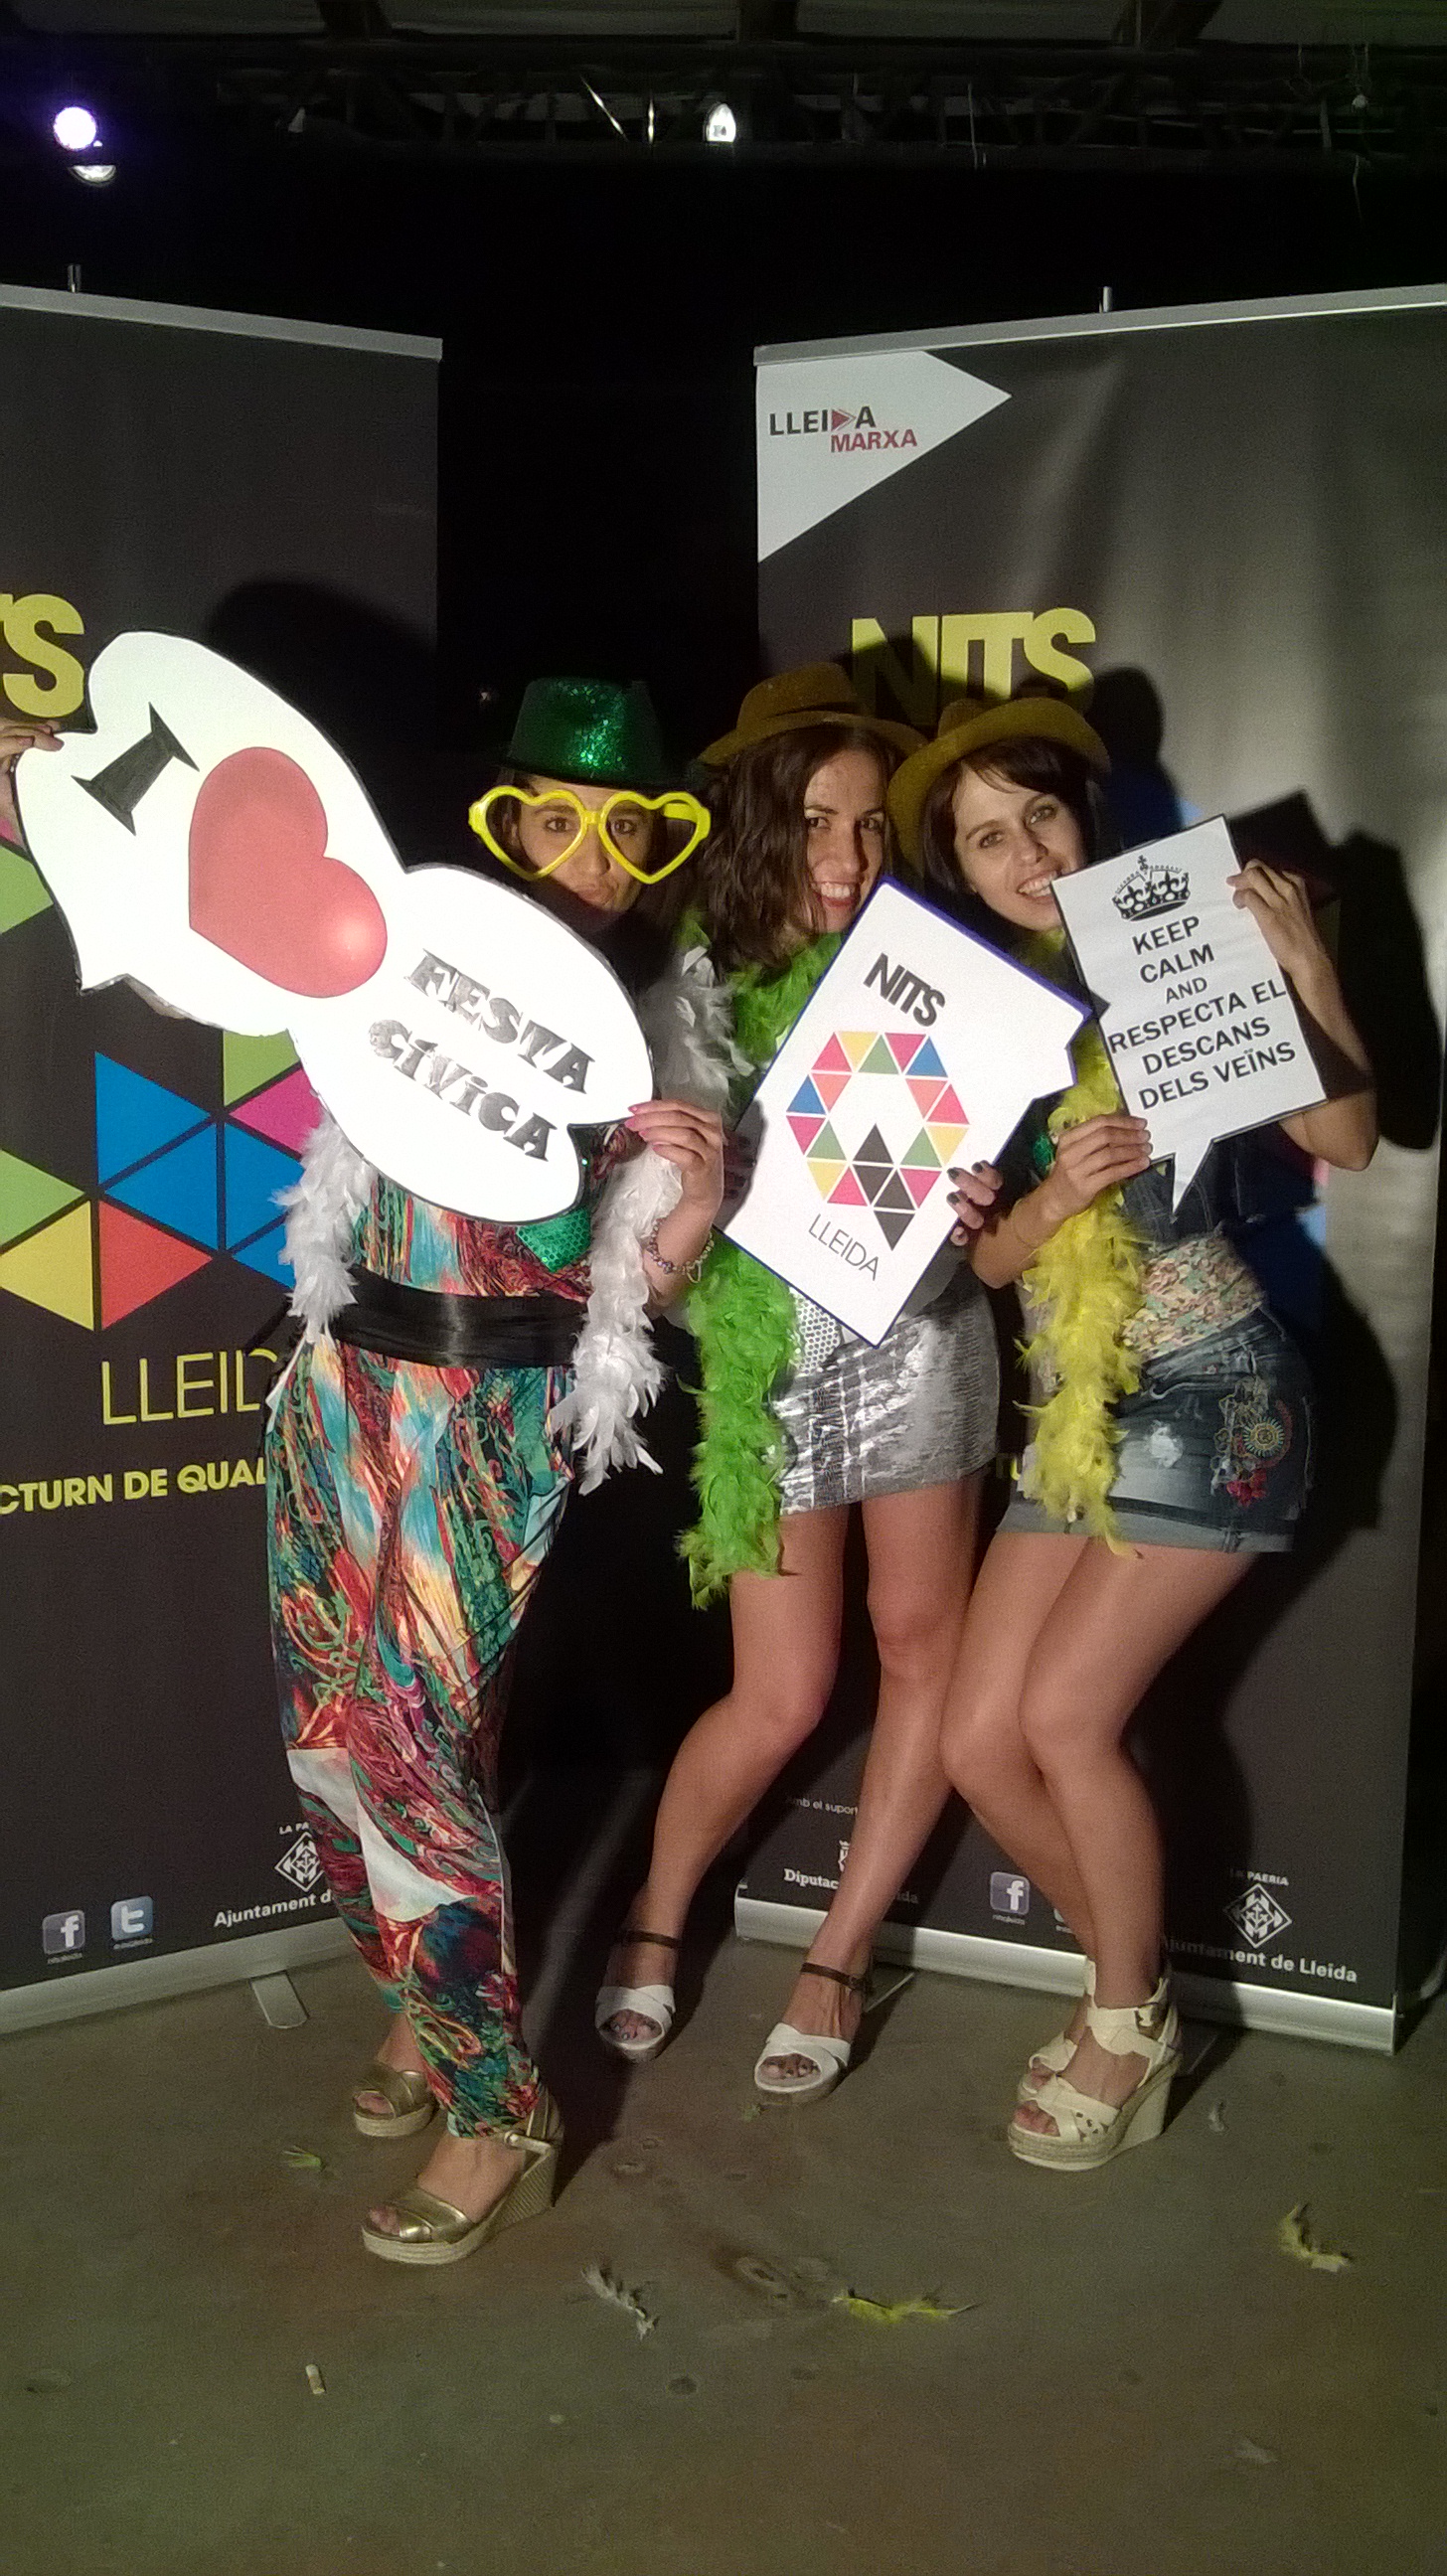 Nits Q Lleida: Campanya a la discoteca Làrida